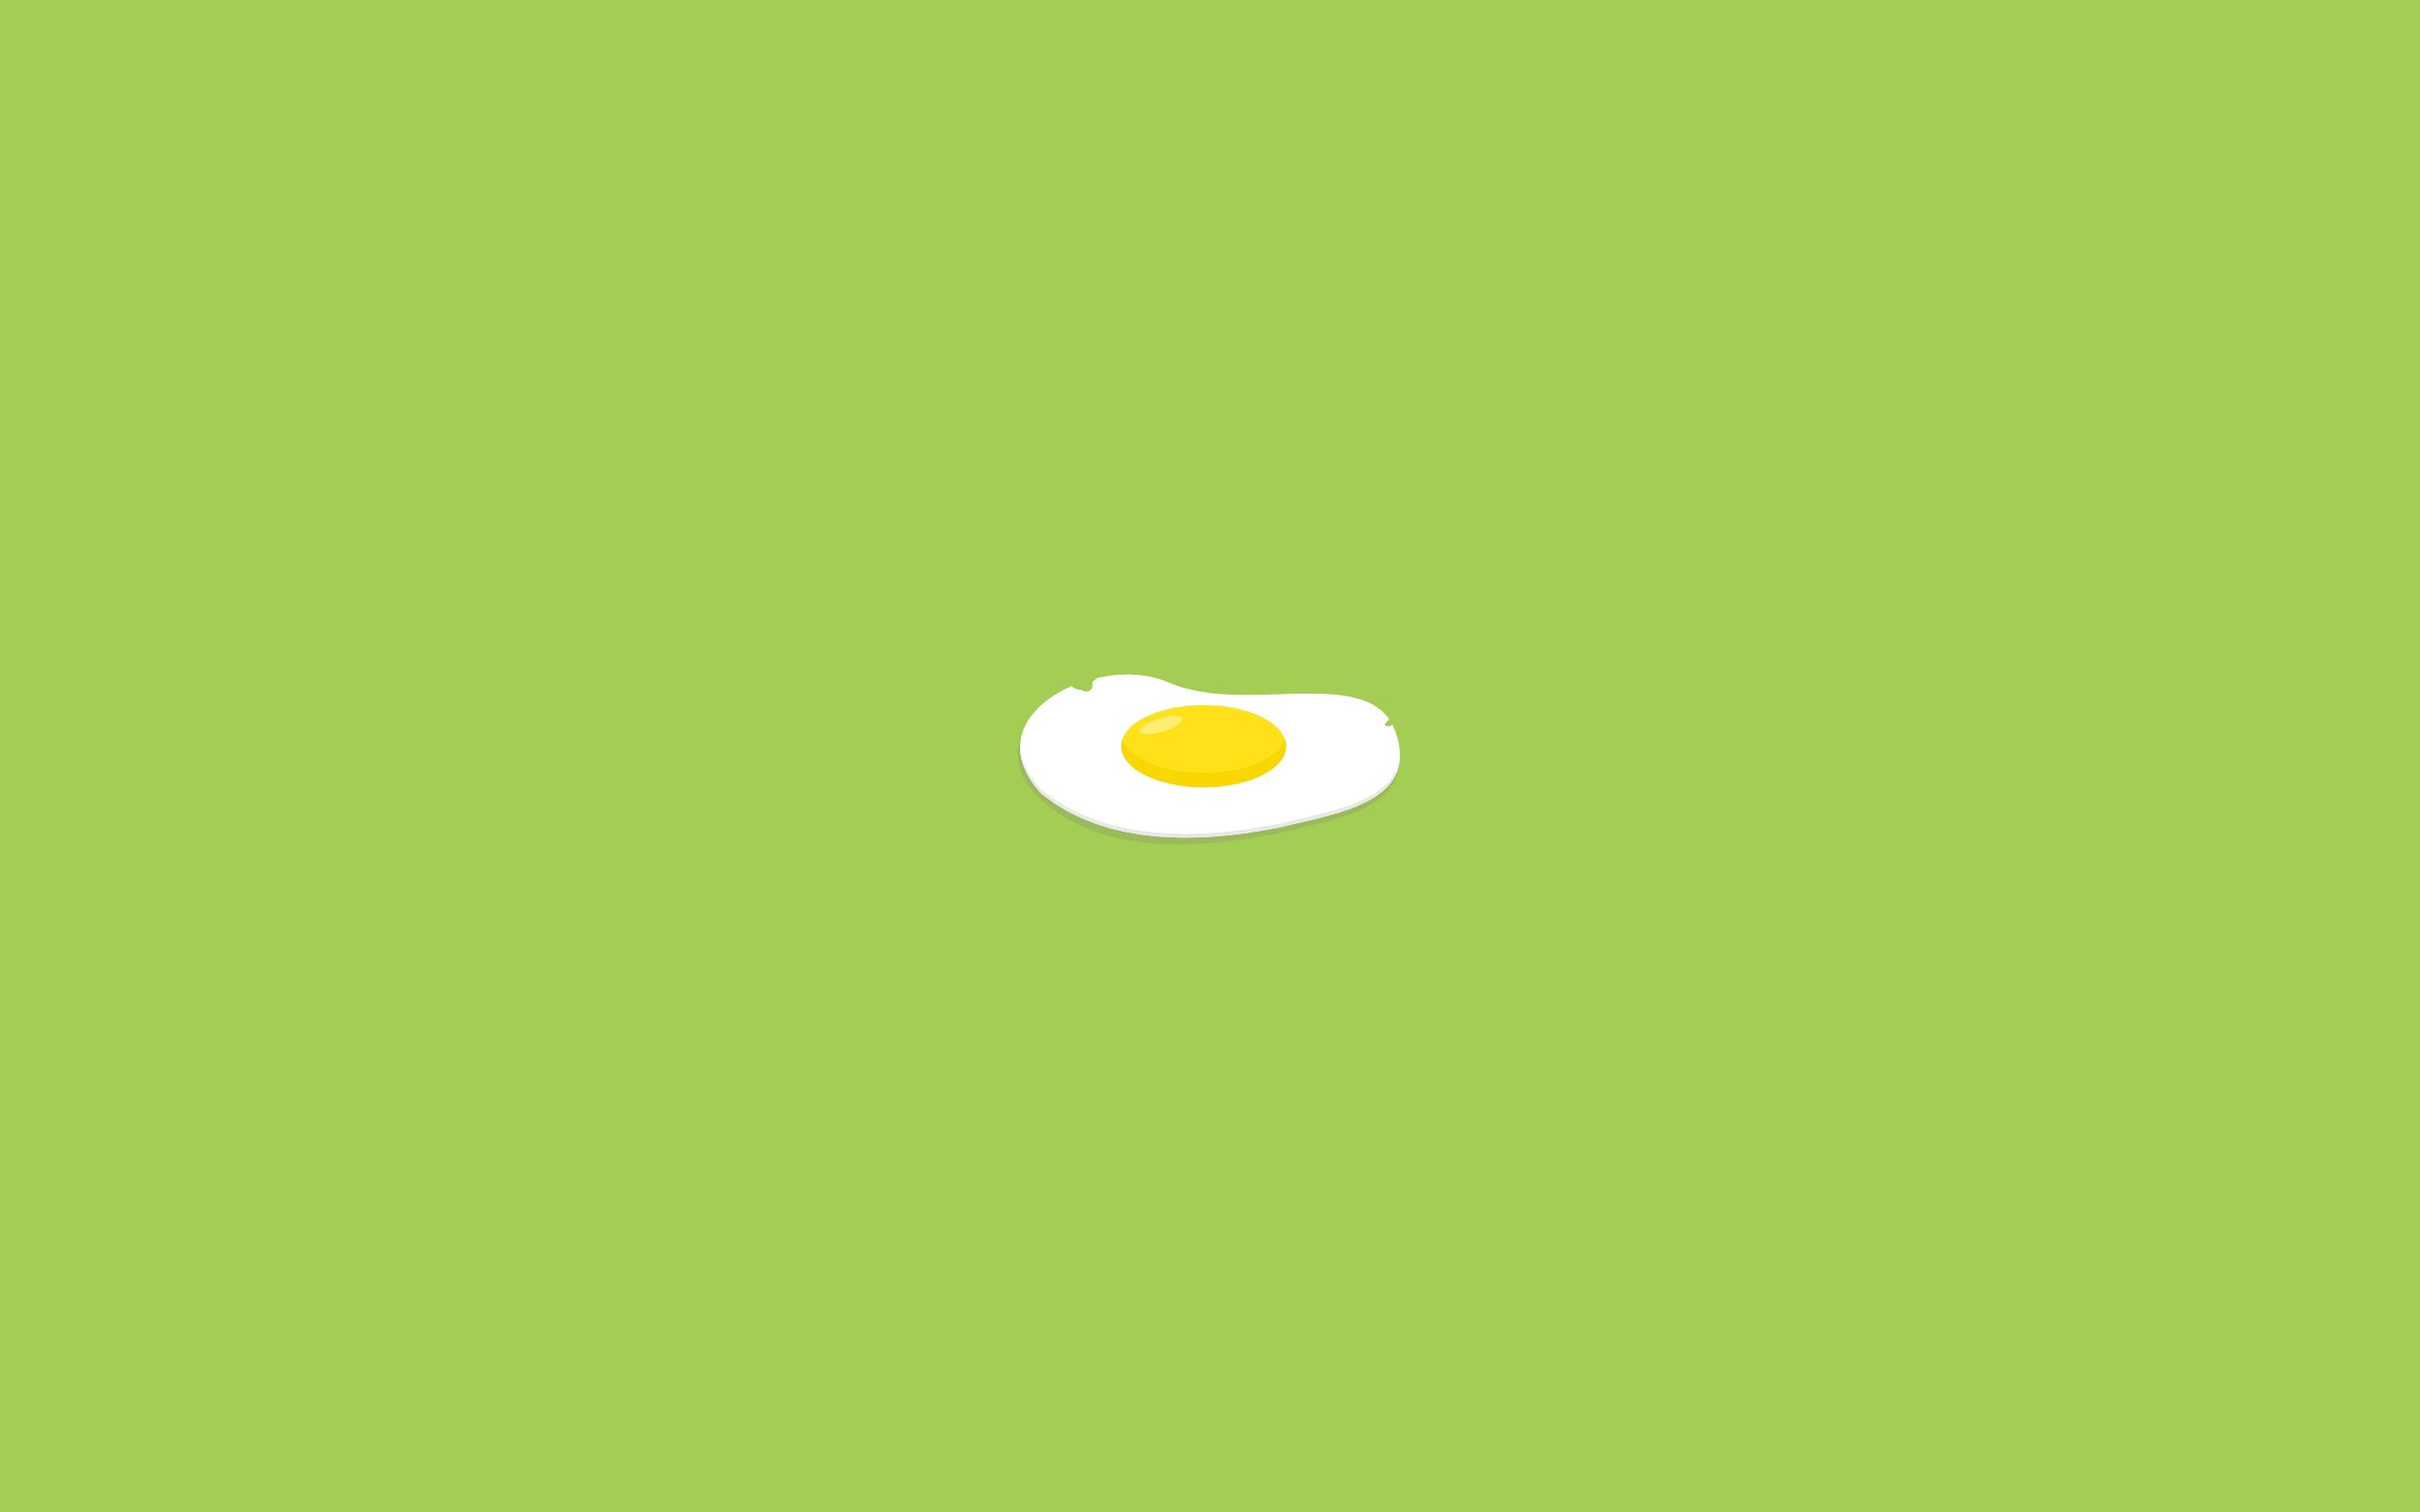 91425 descargar imagen fondo, comida, minimalismo, imagen, dibujo, huevos revueltos: fondos de pantalla y protectores de pantalla gratis